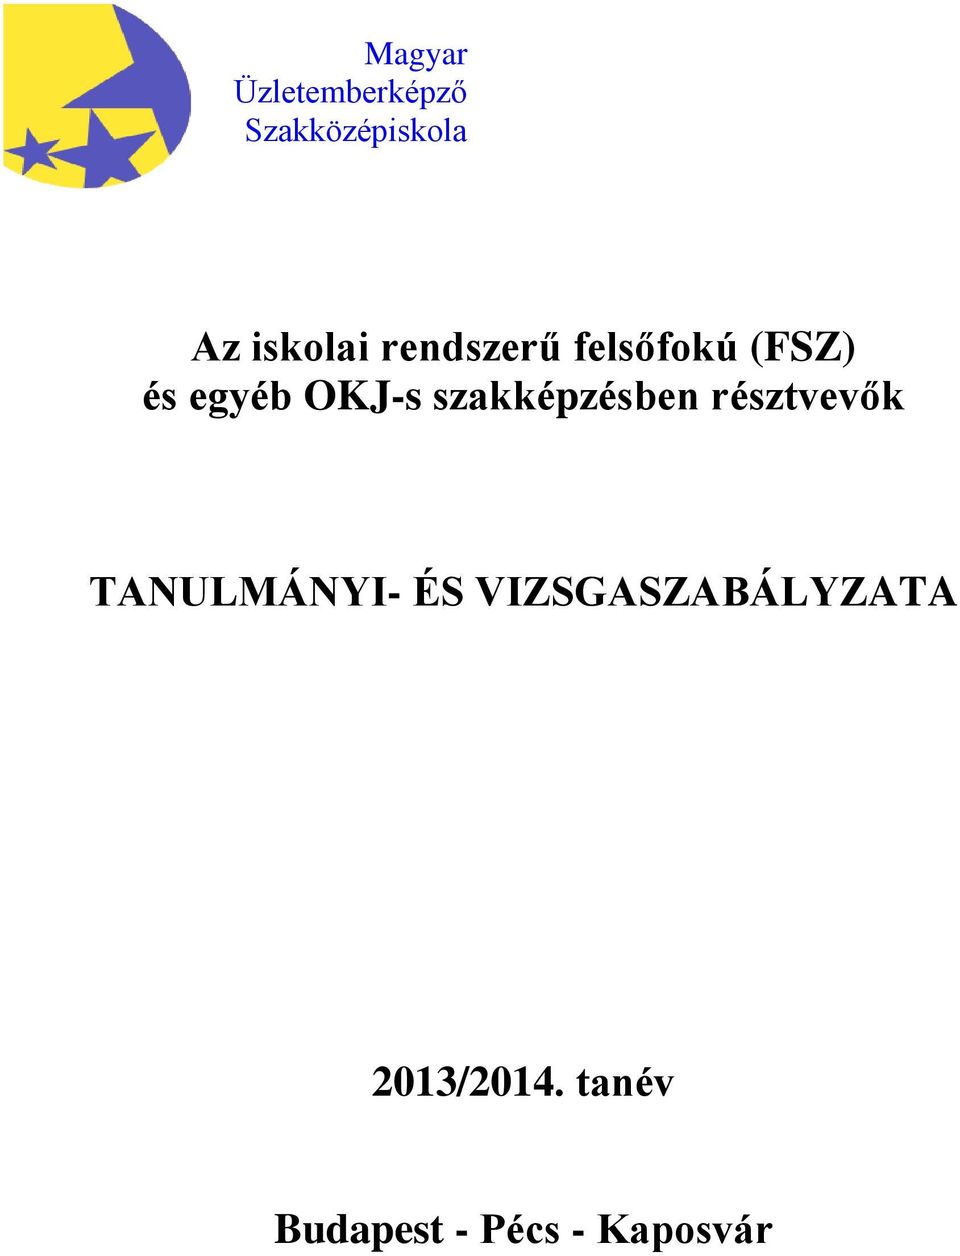 Az iskolai rendszerű felsőfokú (FSZ) és egyéb OKJ-s szakképzésben  résztvevők TANULMÁNYI- ÉS VIZSGASZABÁLYZATA. 2013/2014. tanév - PDF  Ingyenes letöltés